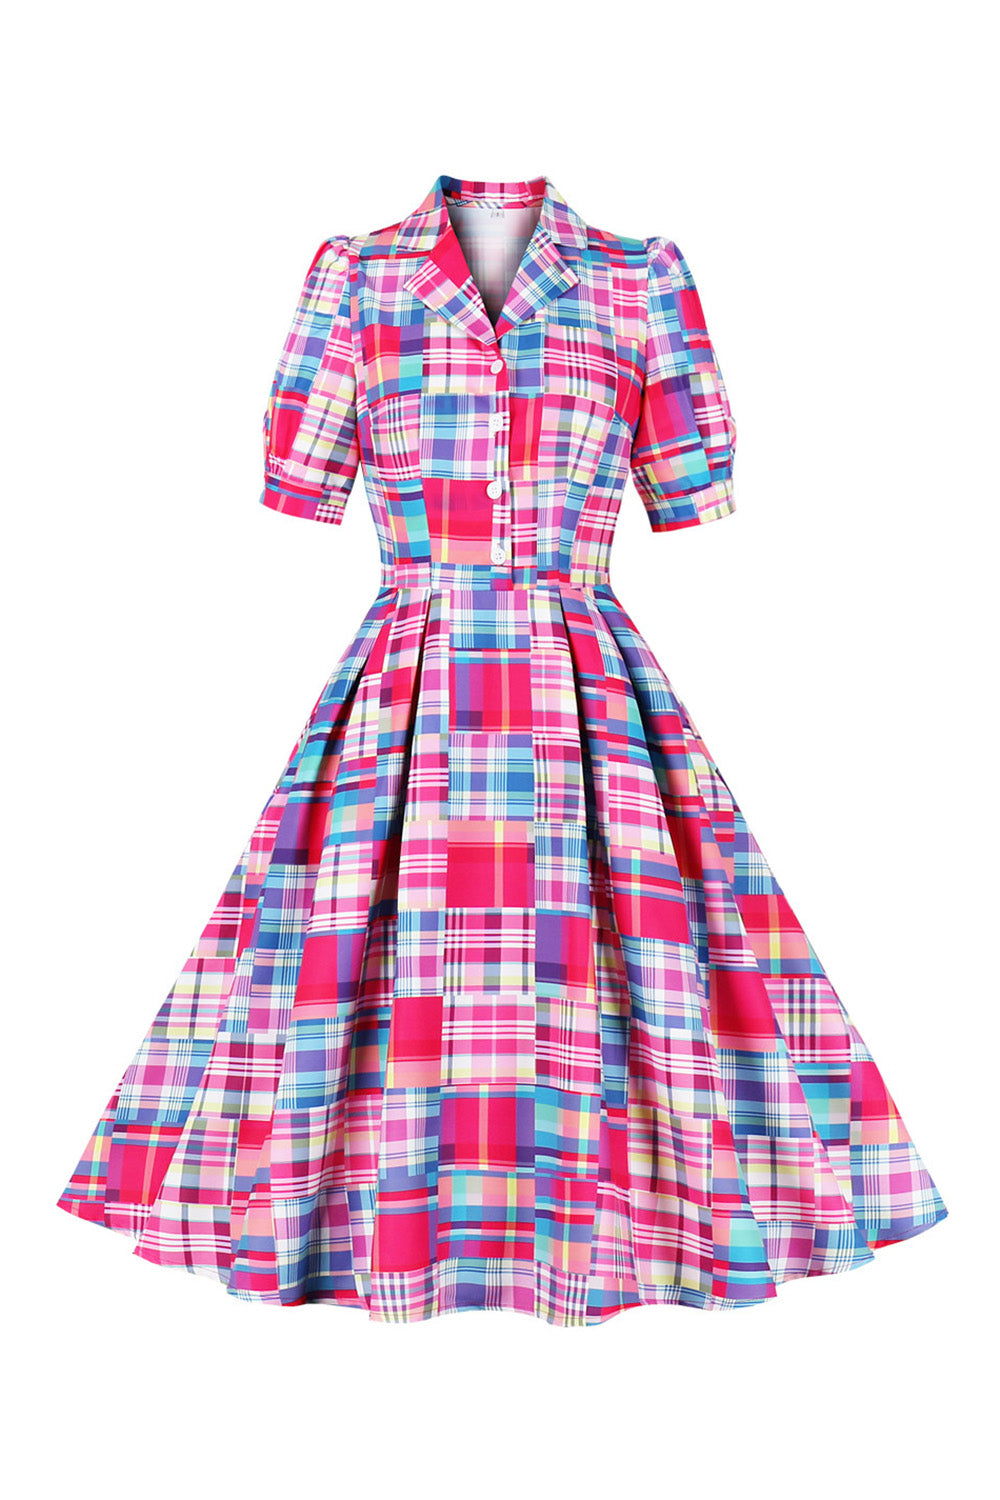 Rosa Knopf Halbärmel Kariertes Kleid aus den 1950er Jahren